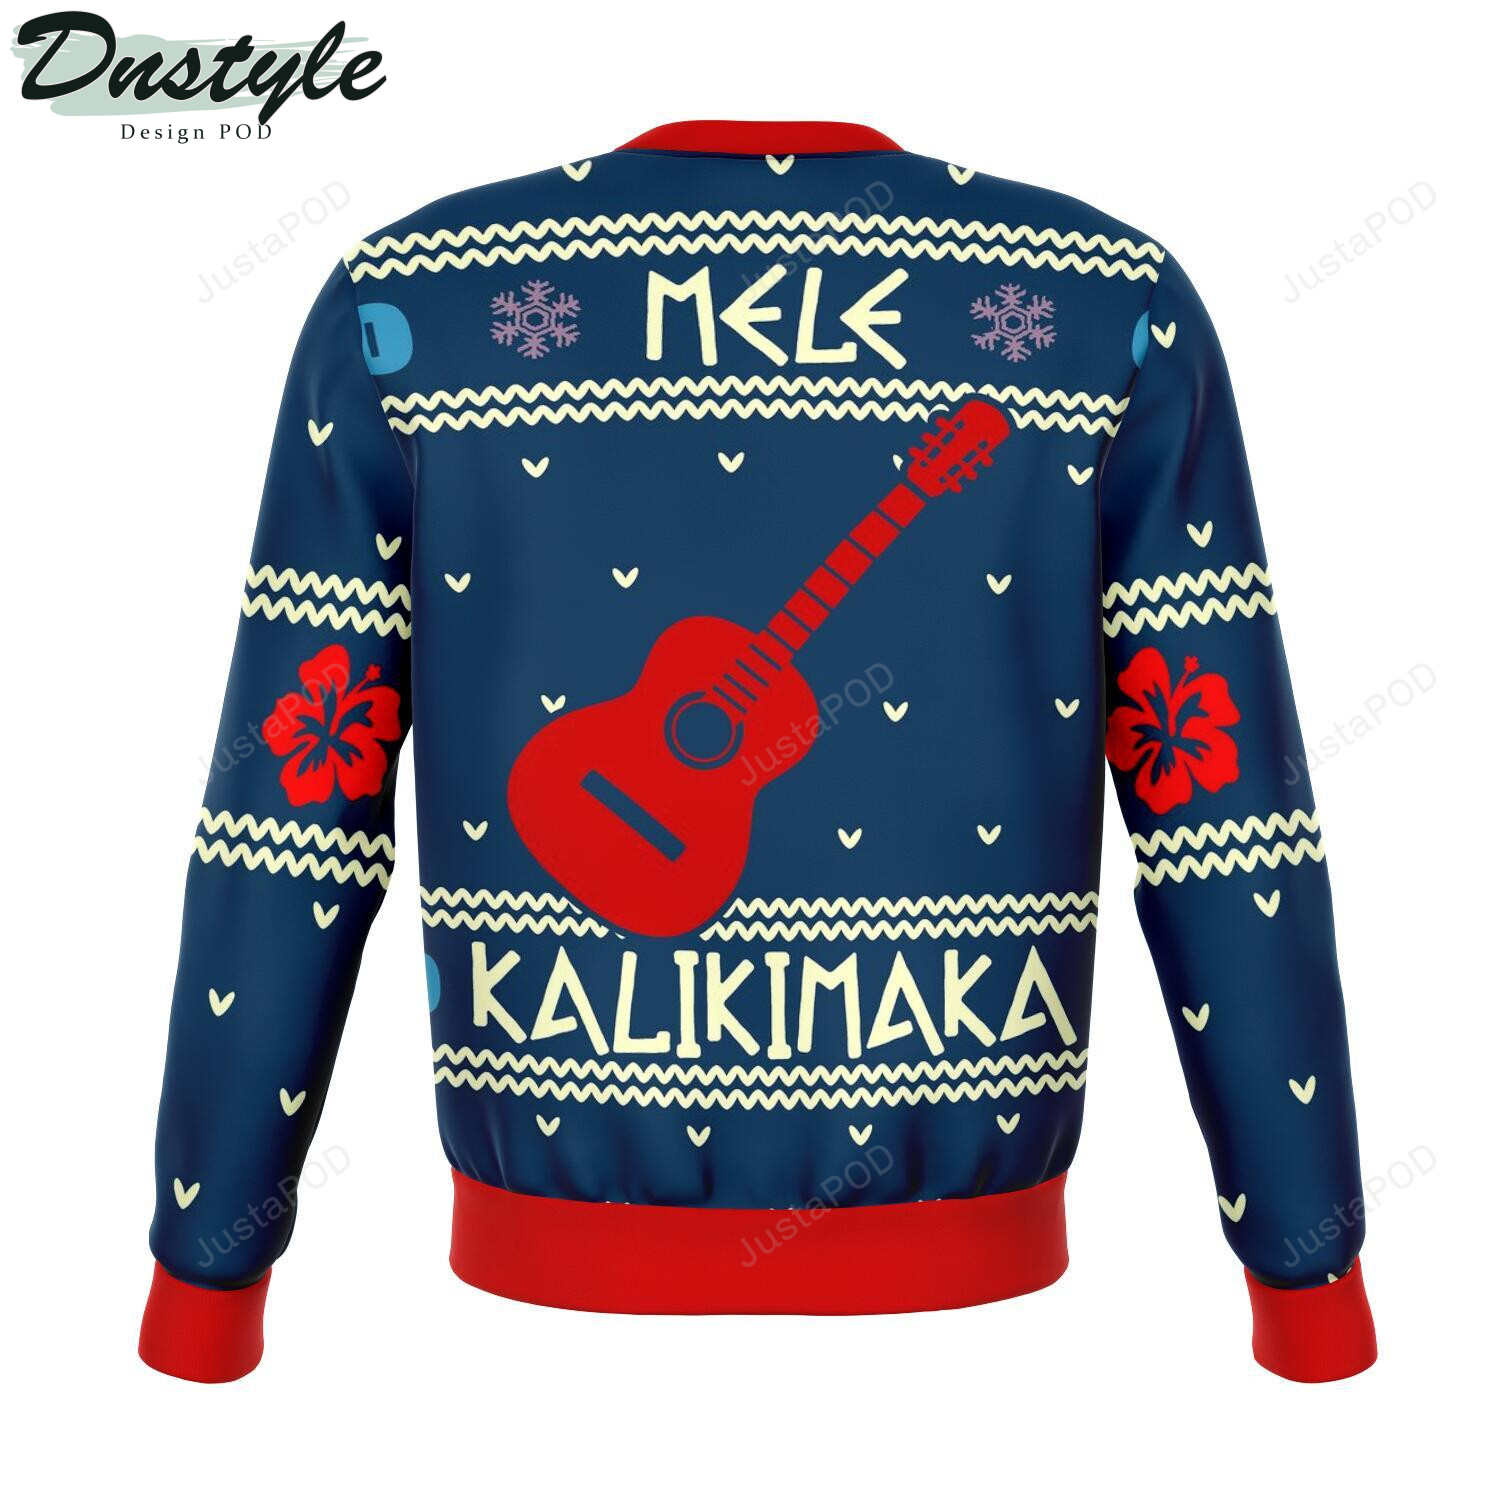 Stitch Mele Kalikimaka Premium Ugly Christmas Wool Sweater